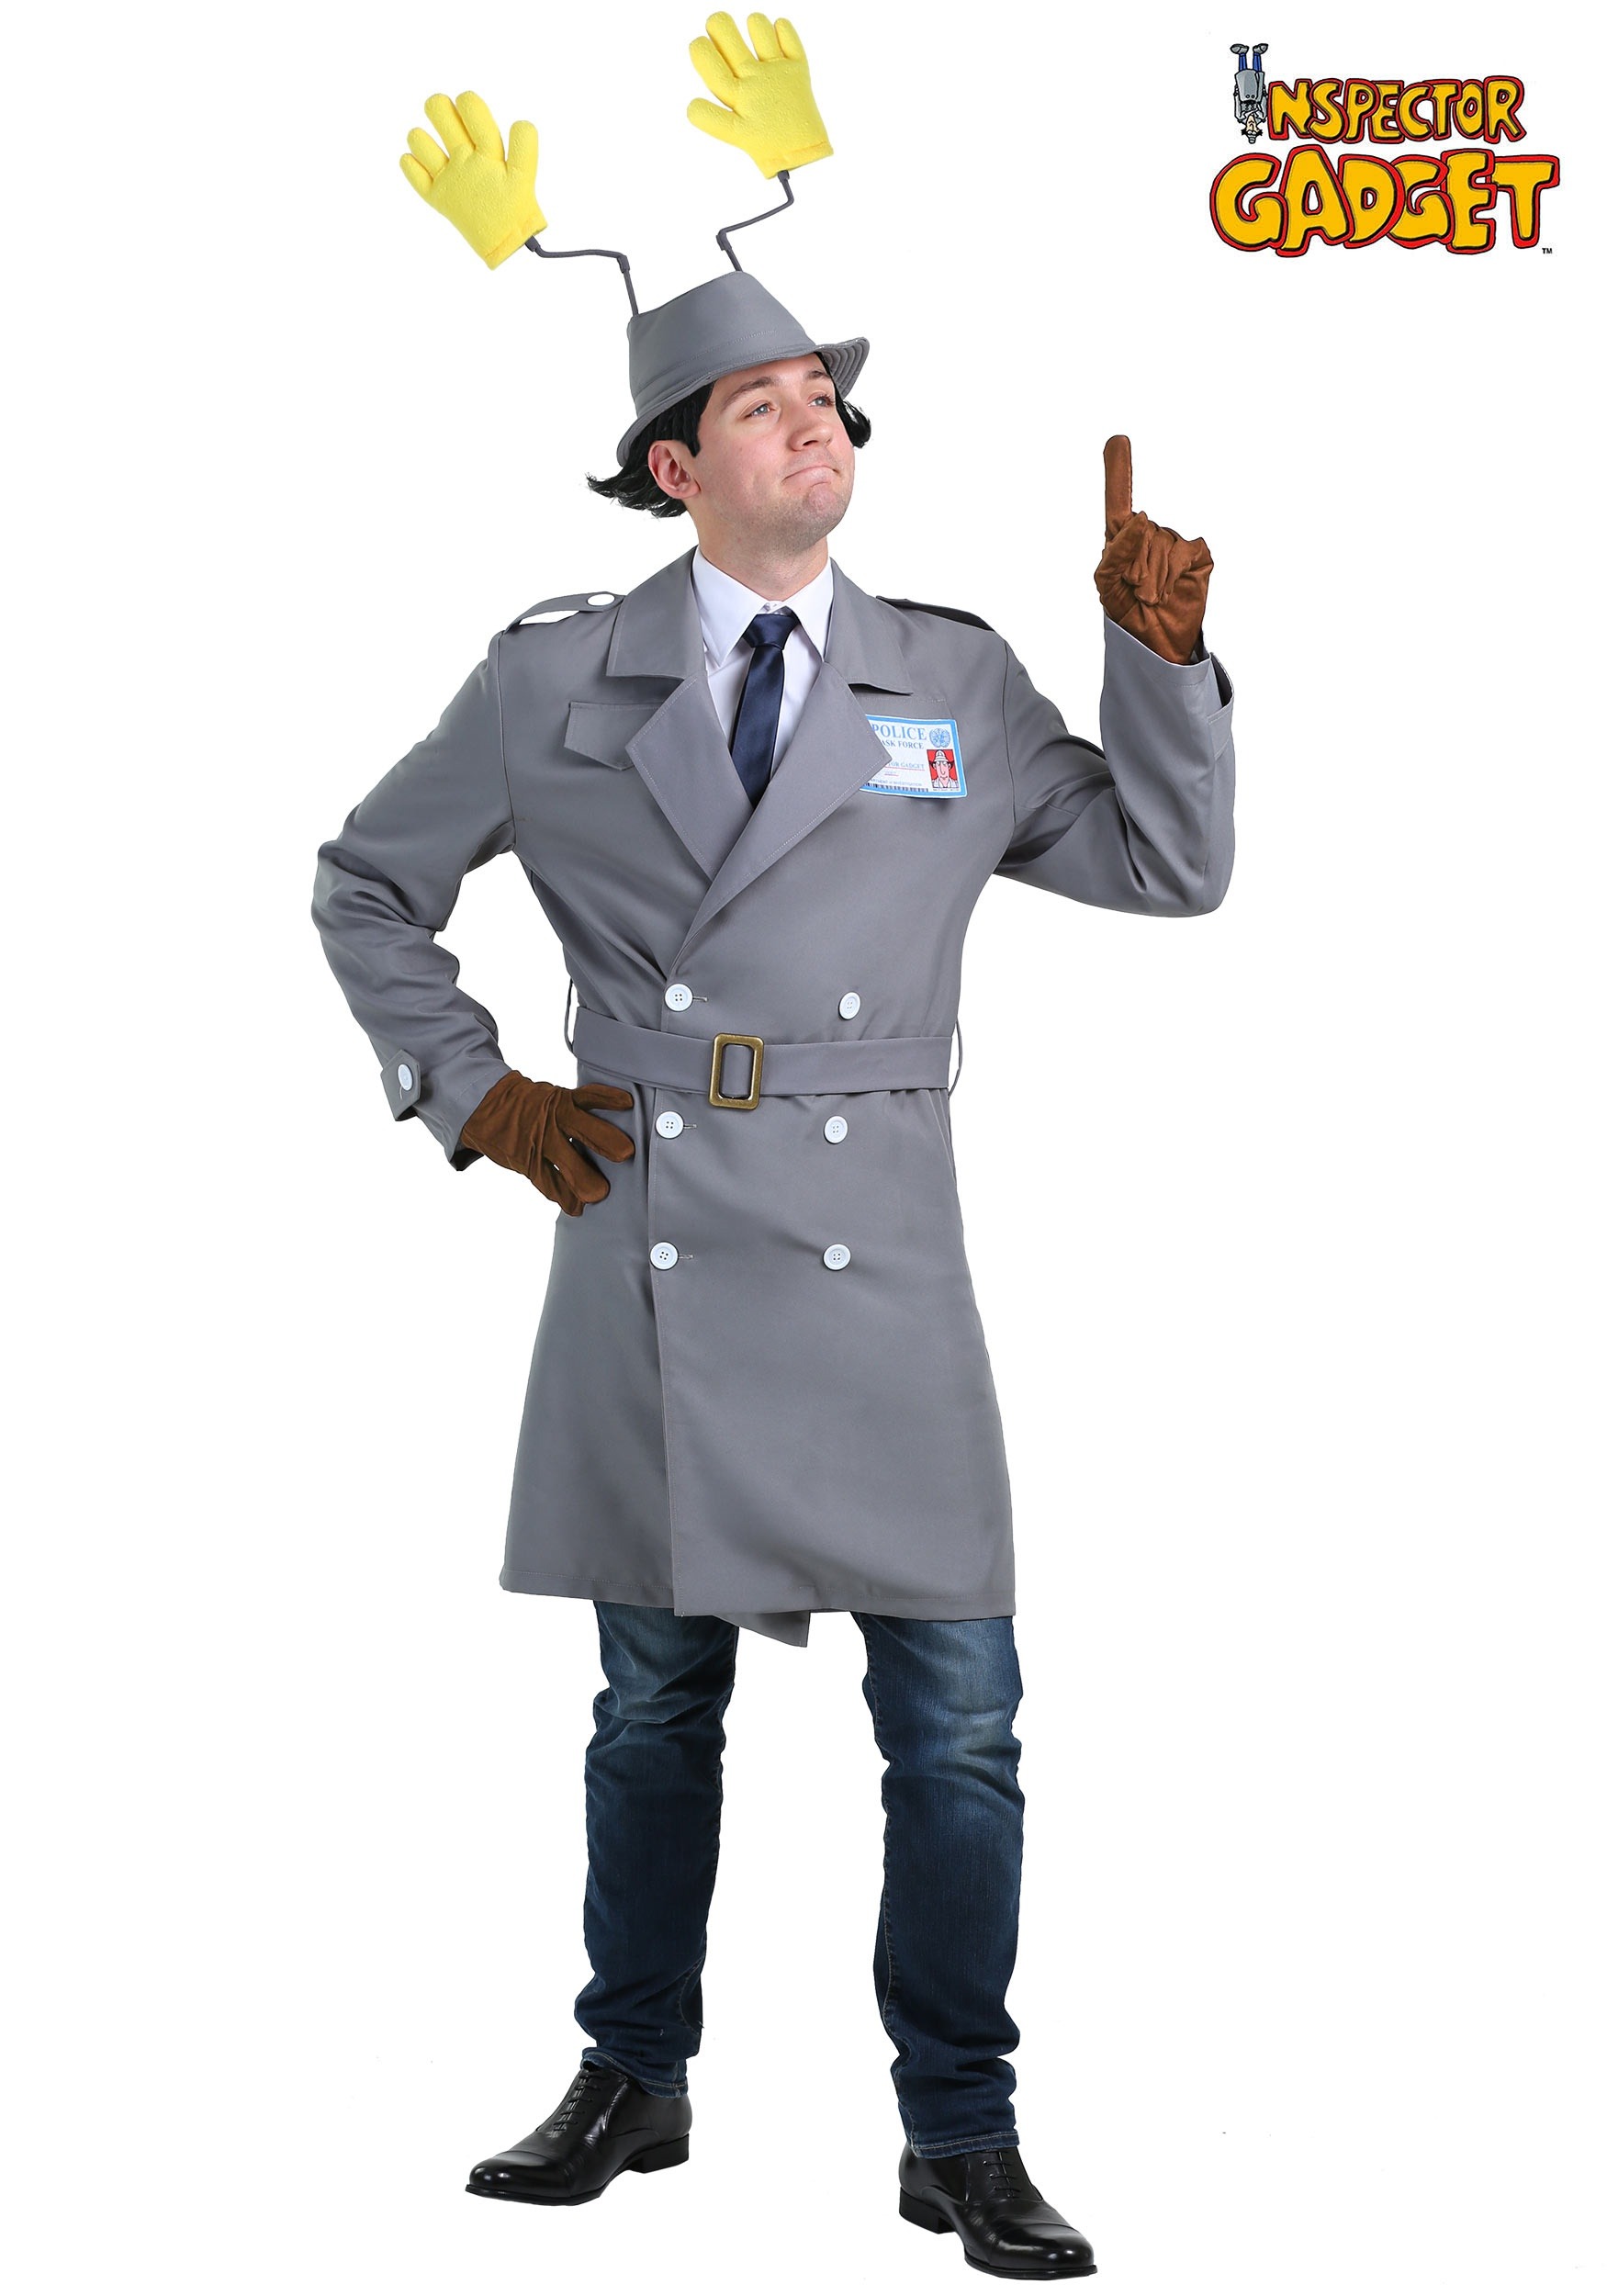 Inspector gadget costume